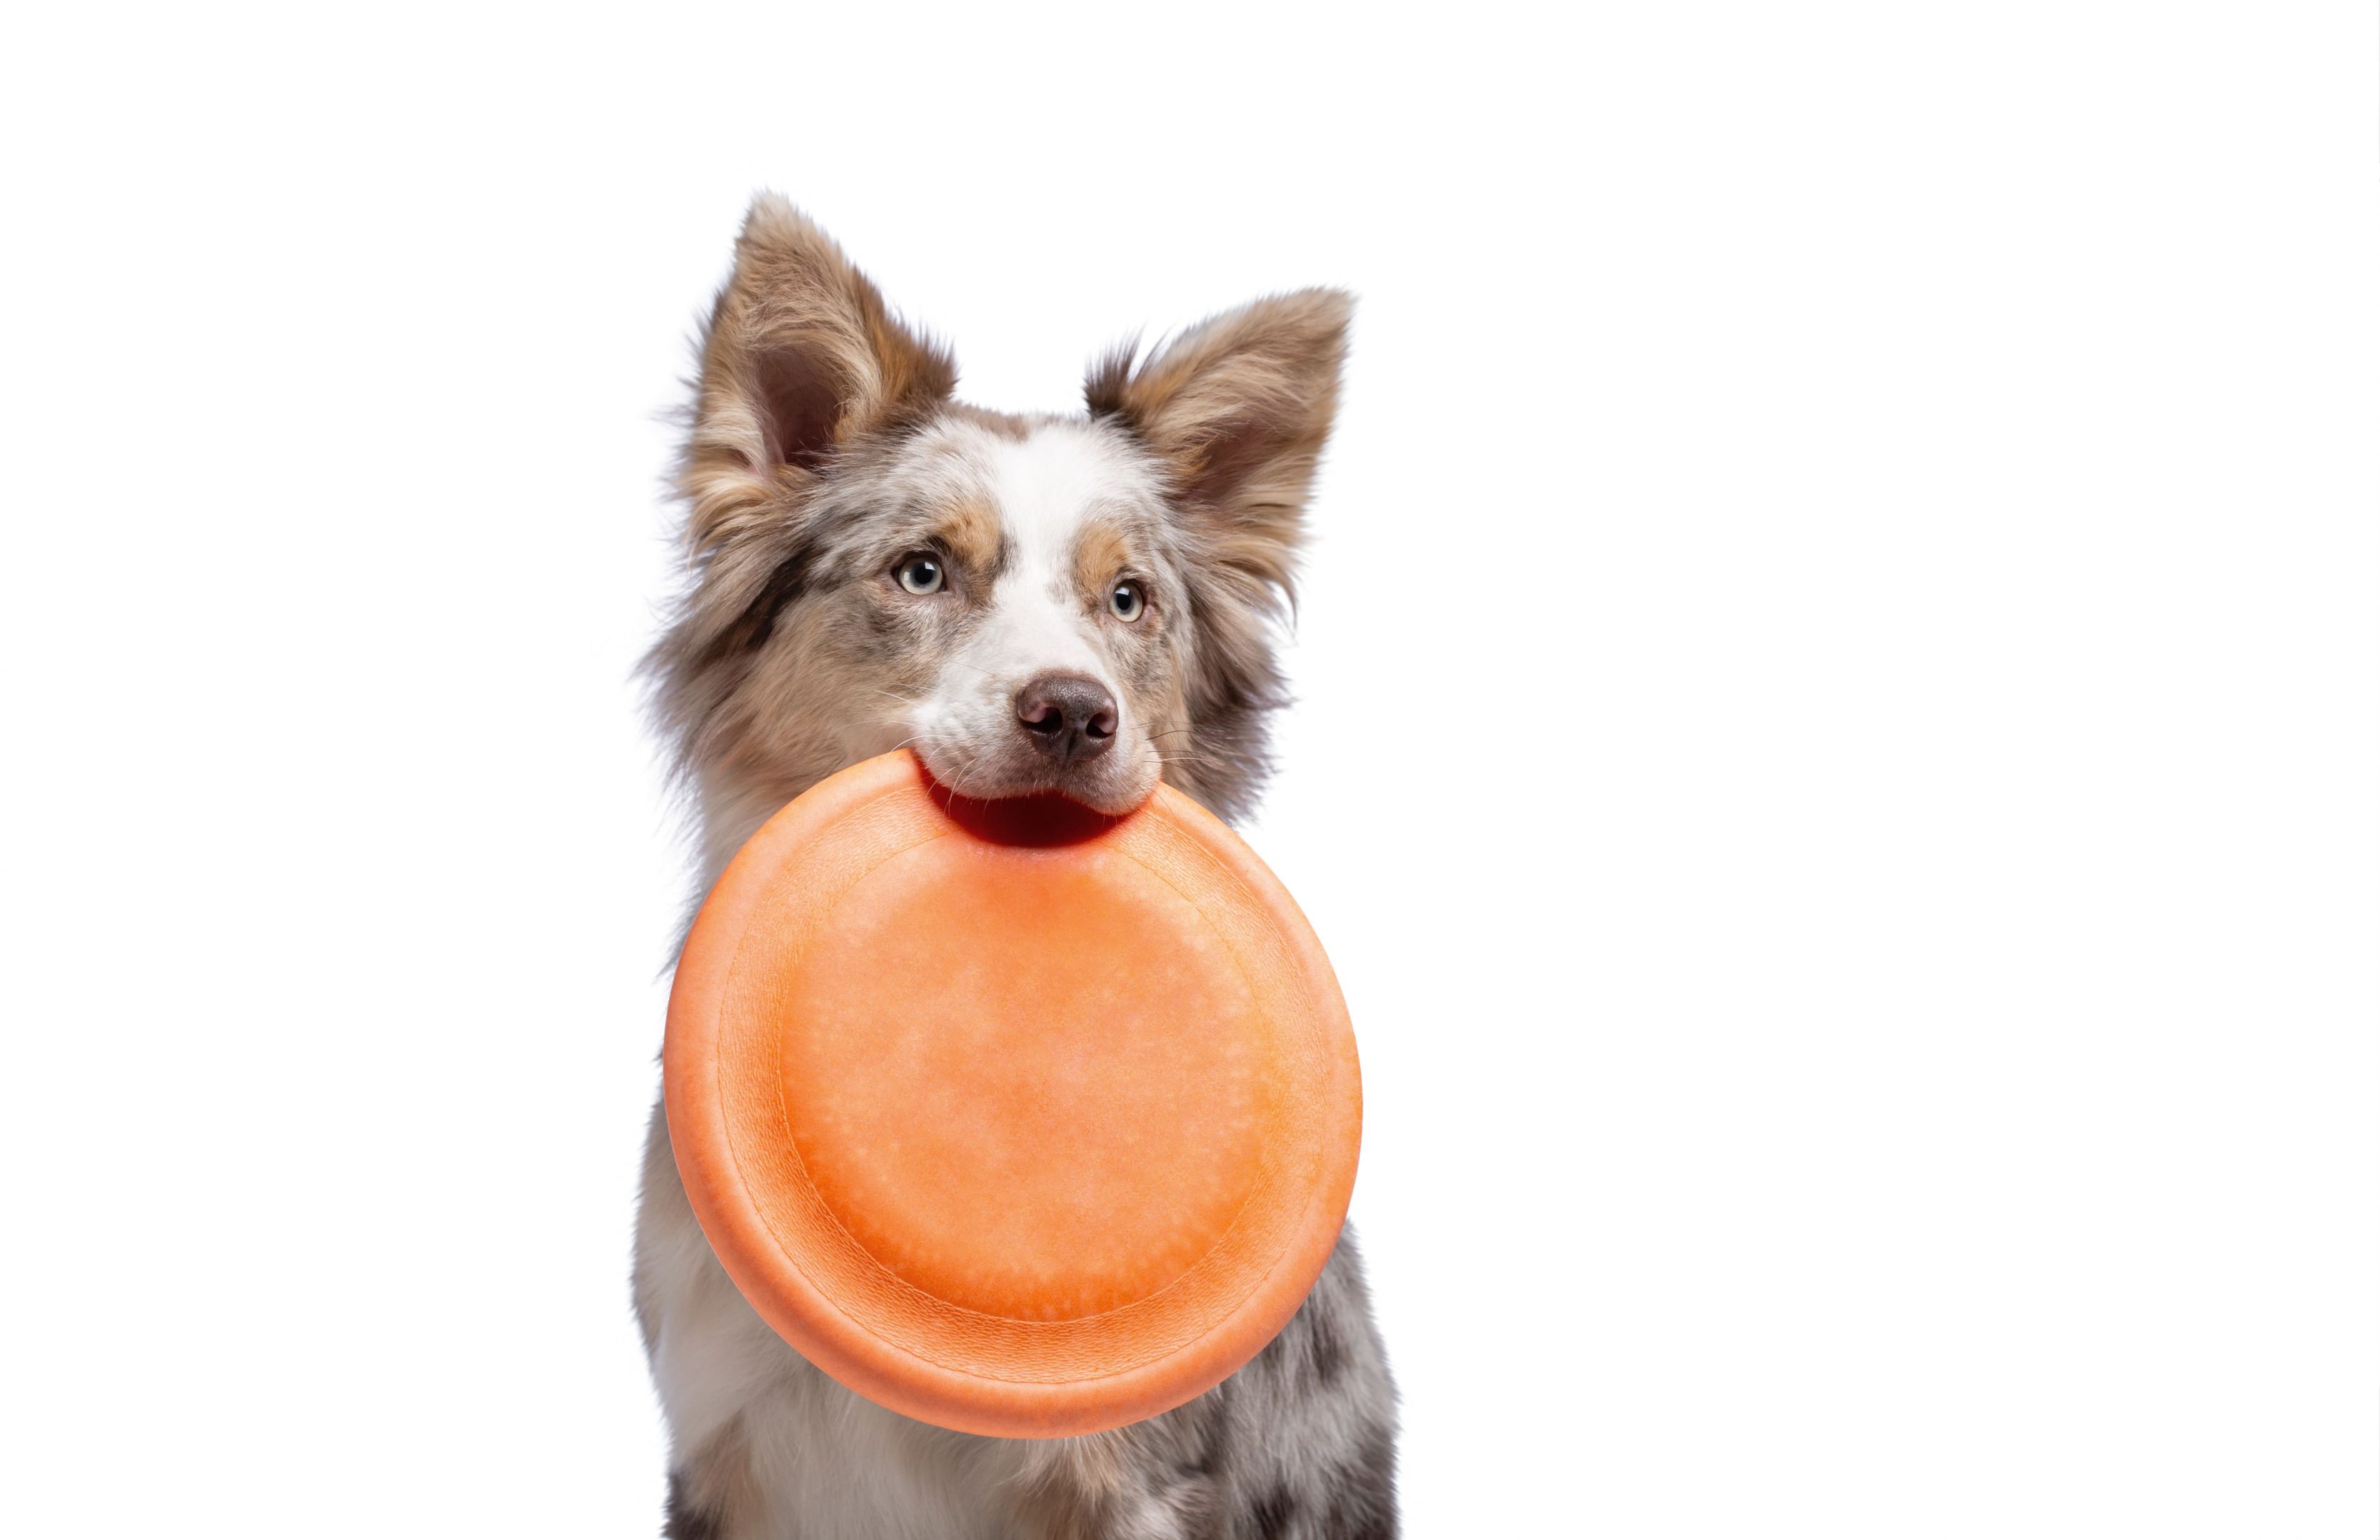 Um cachorro da raça border collie na cor branco e cinza segurando em sua boca um frisbe laranjado.